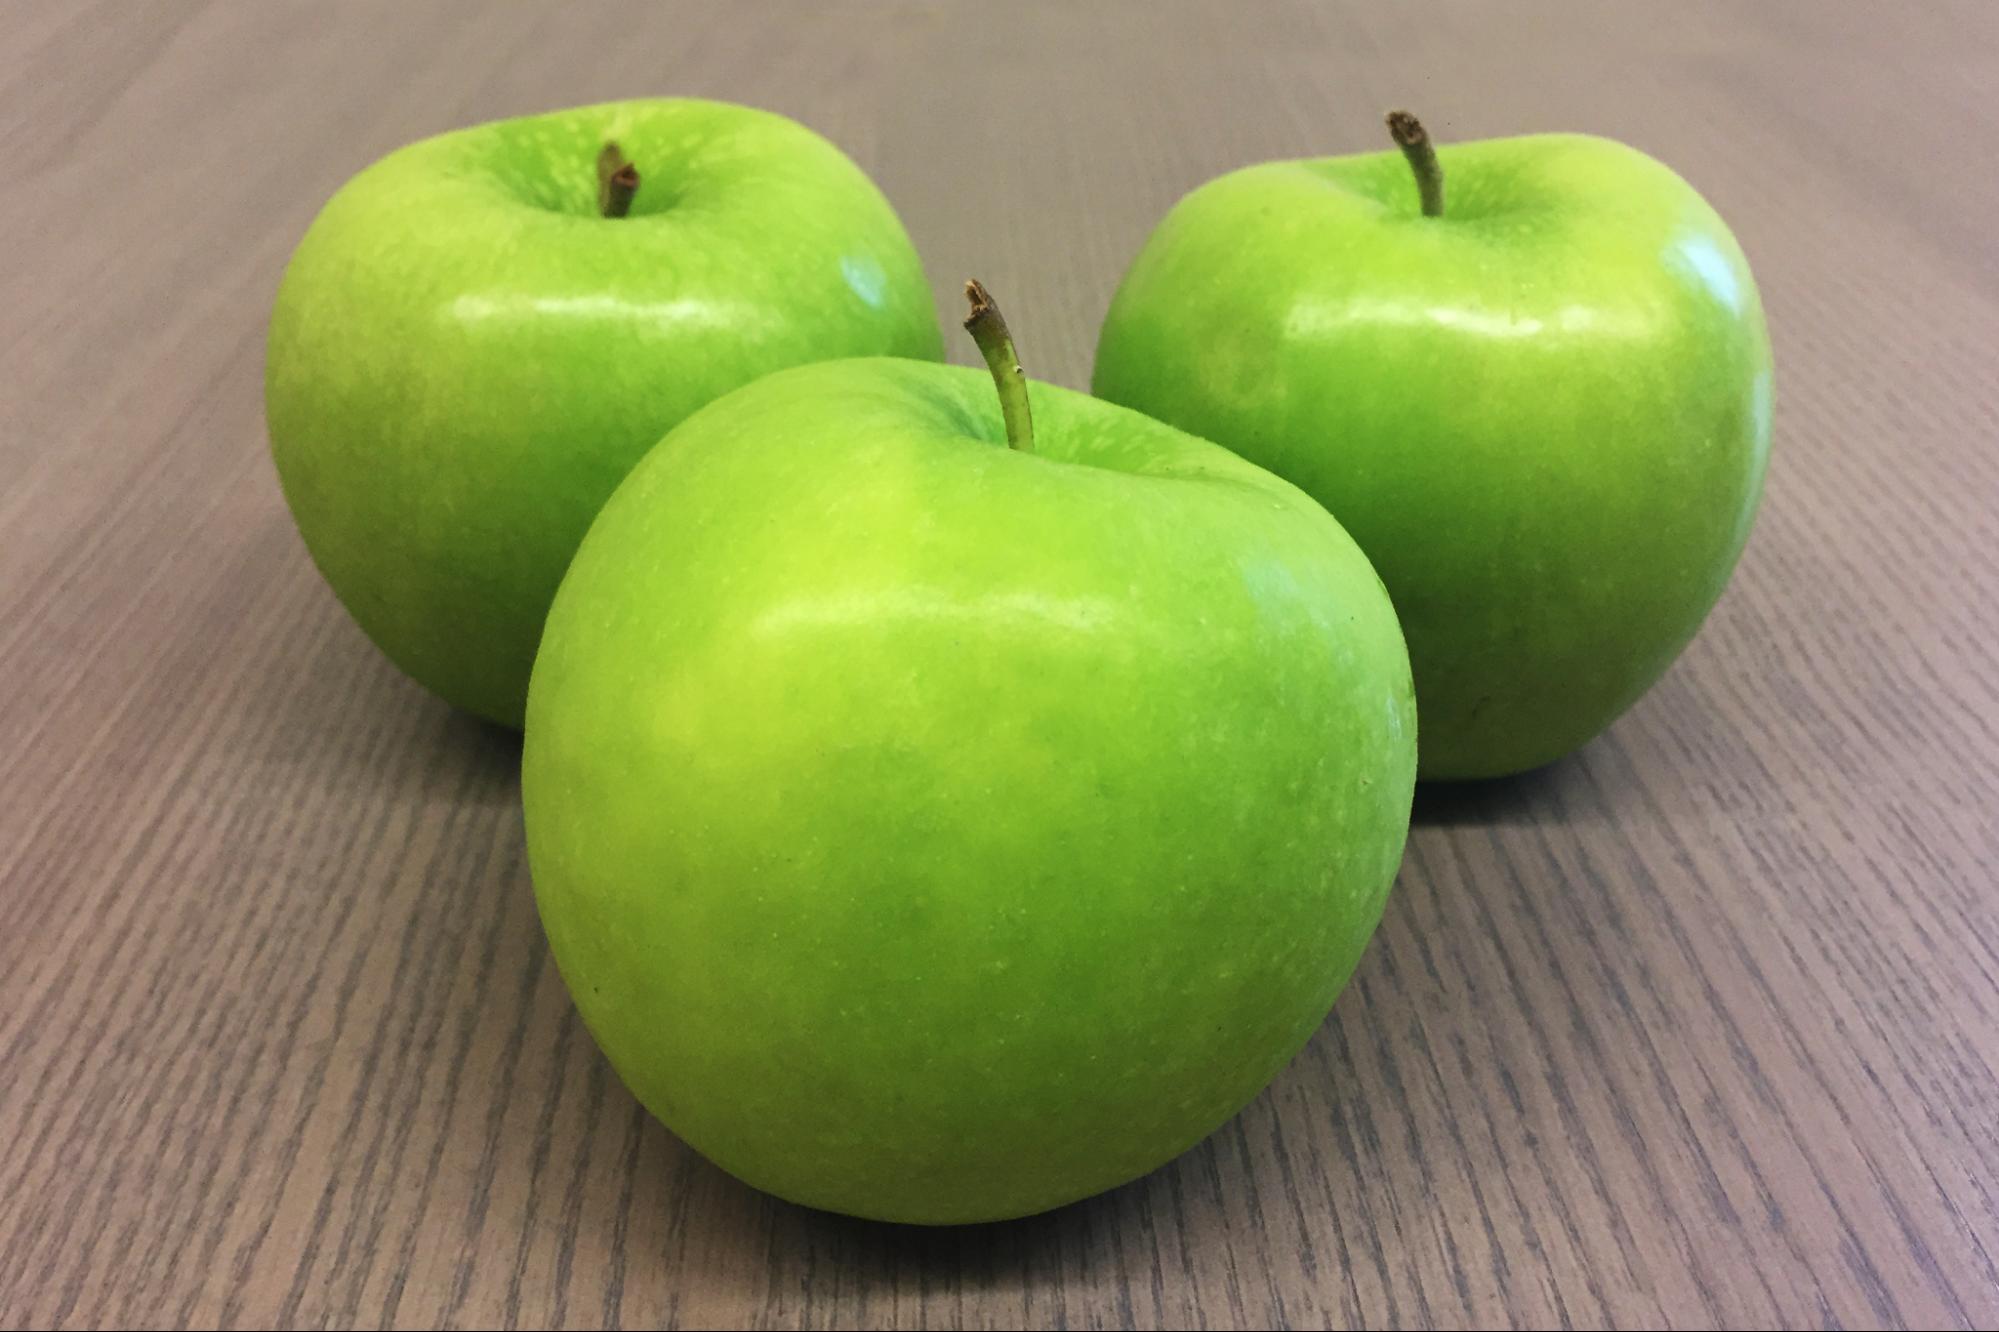 green apple varieties